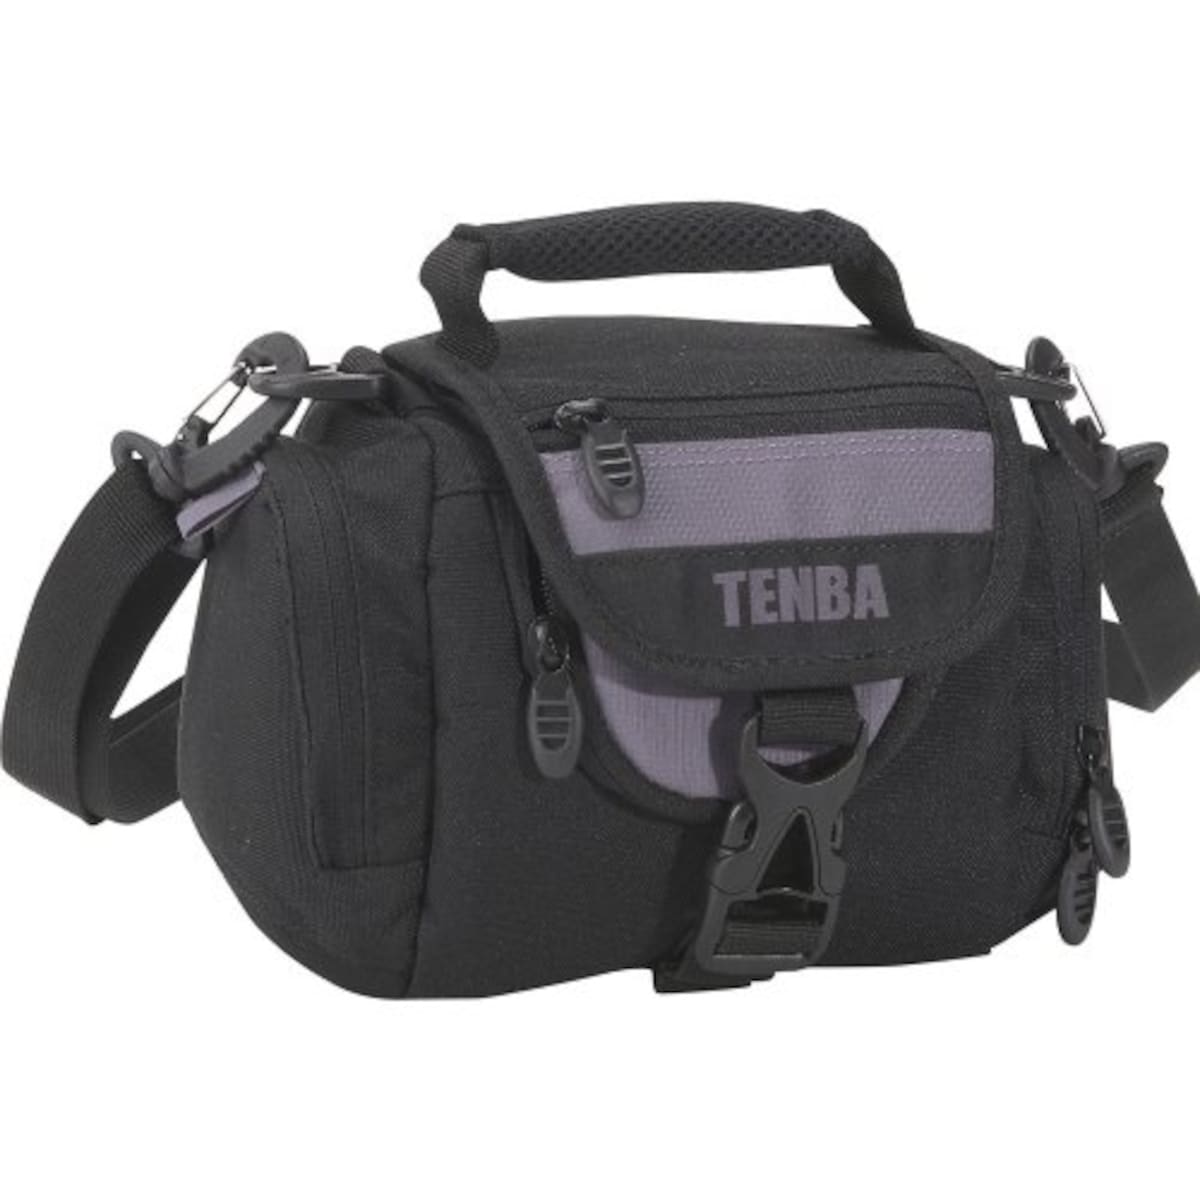 TENBA ショルダーバッグ エクスプレスショルダーバッグS ブラック/グレー 638-531